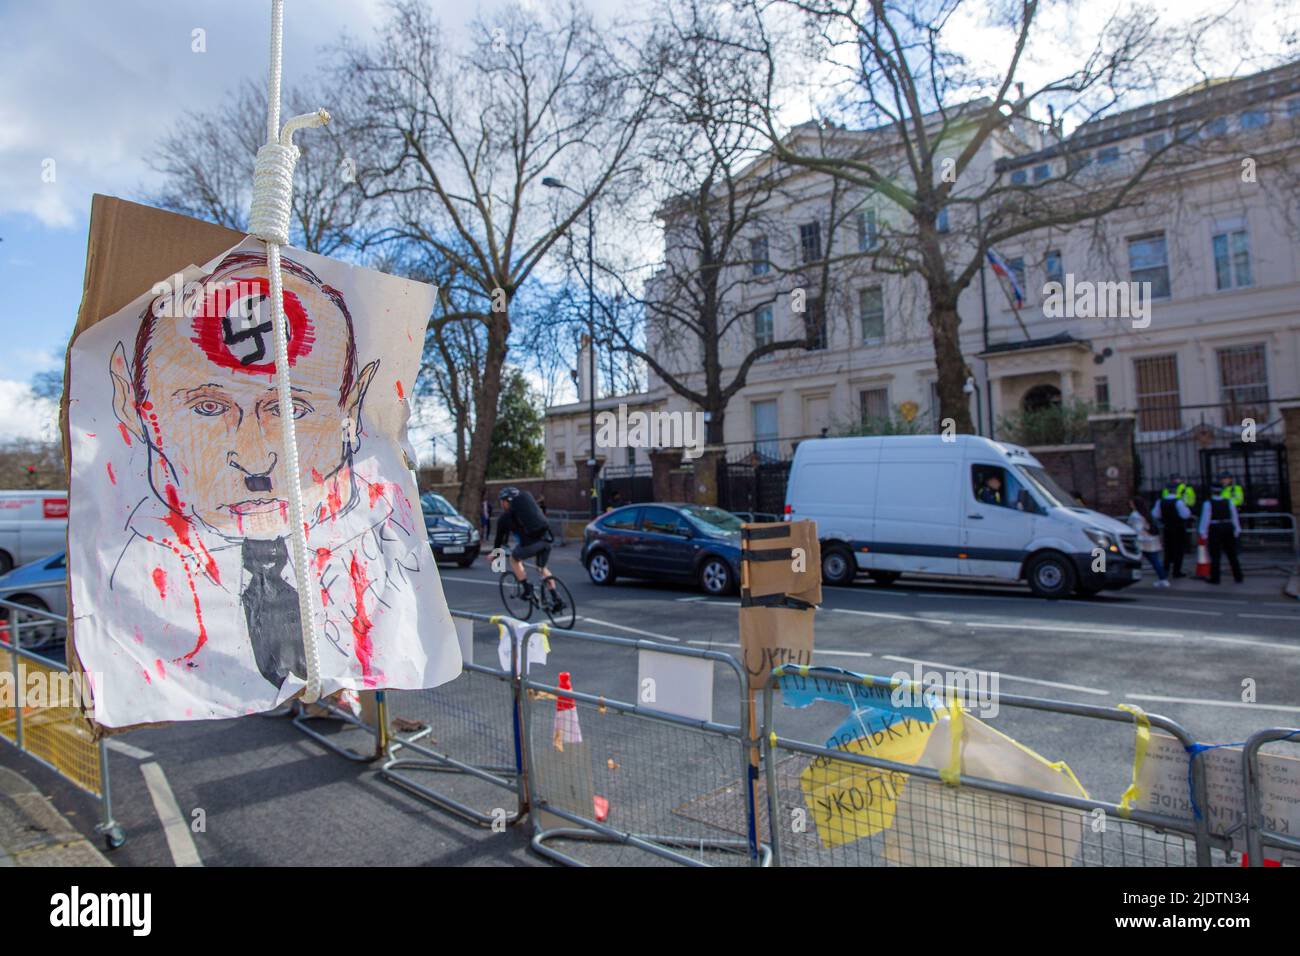 Des pancartes et des affiches contre le président russe Vladimir Poutine et son invasion de l'Ukraine sont visibles près de l'ambassade de Russie à Londres. Banque D'Images